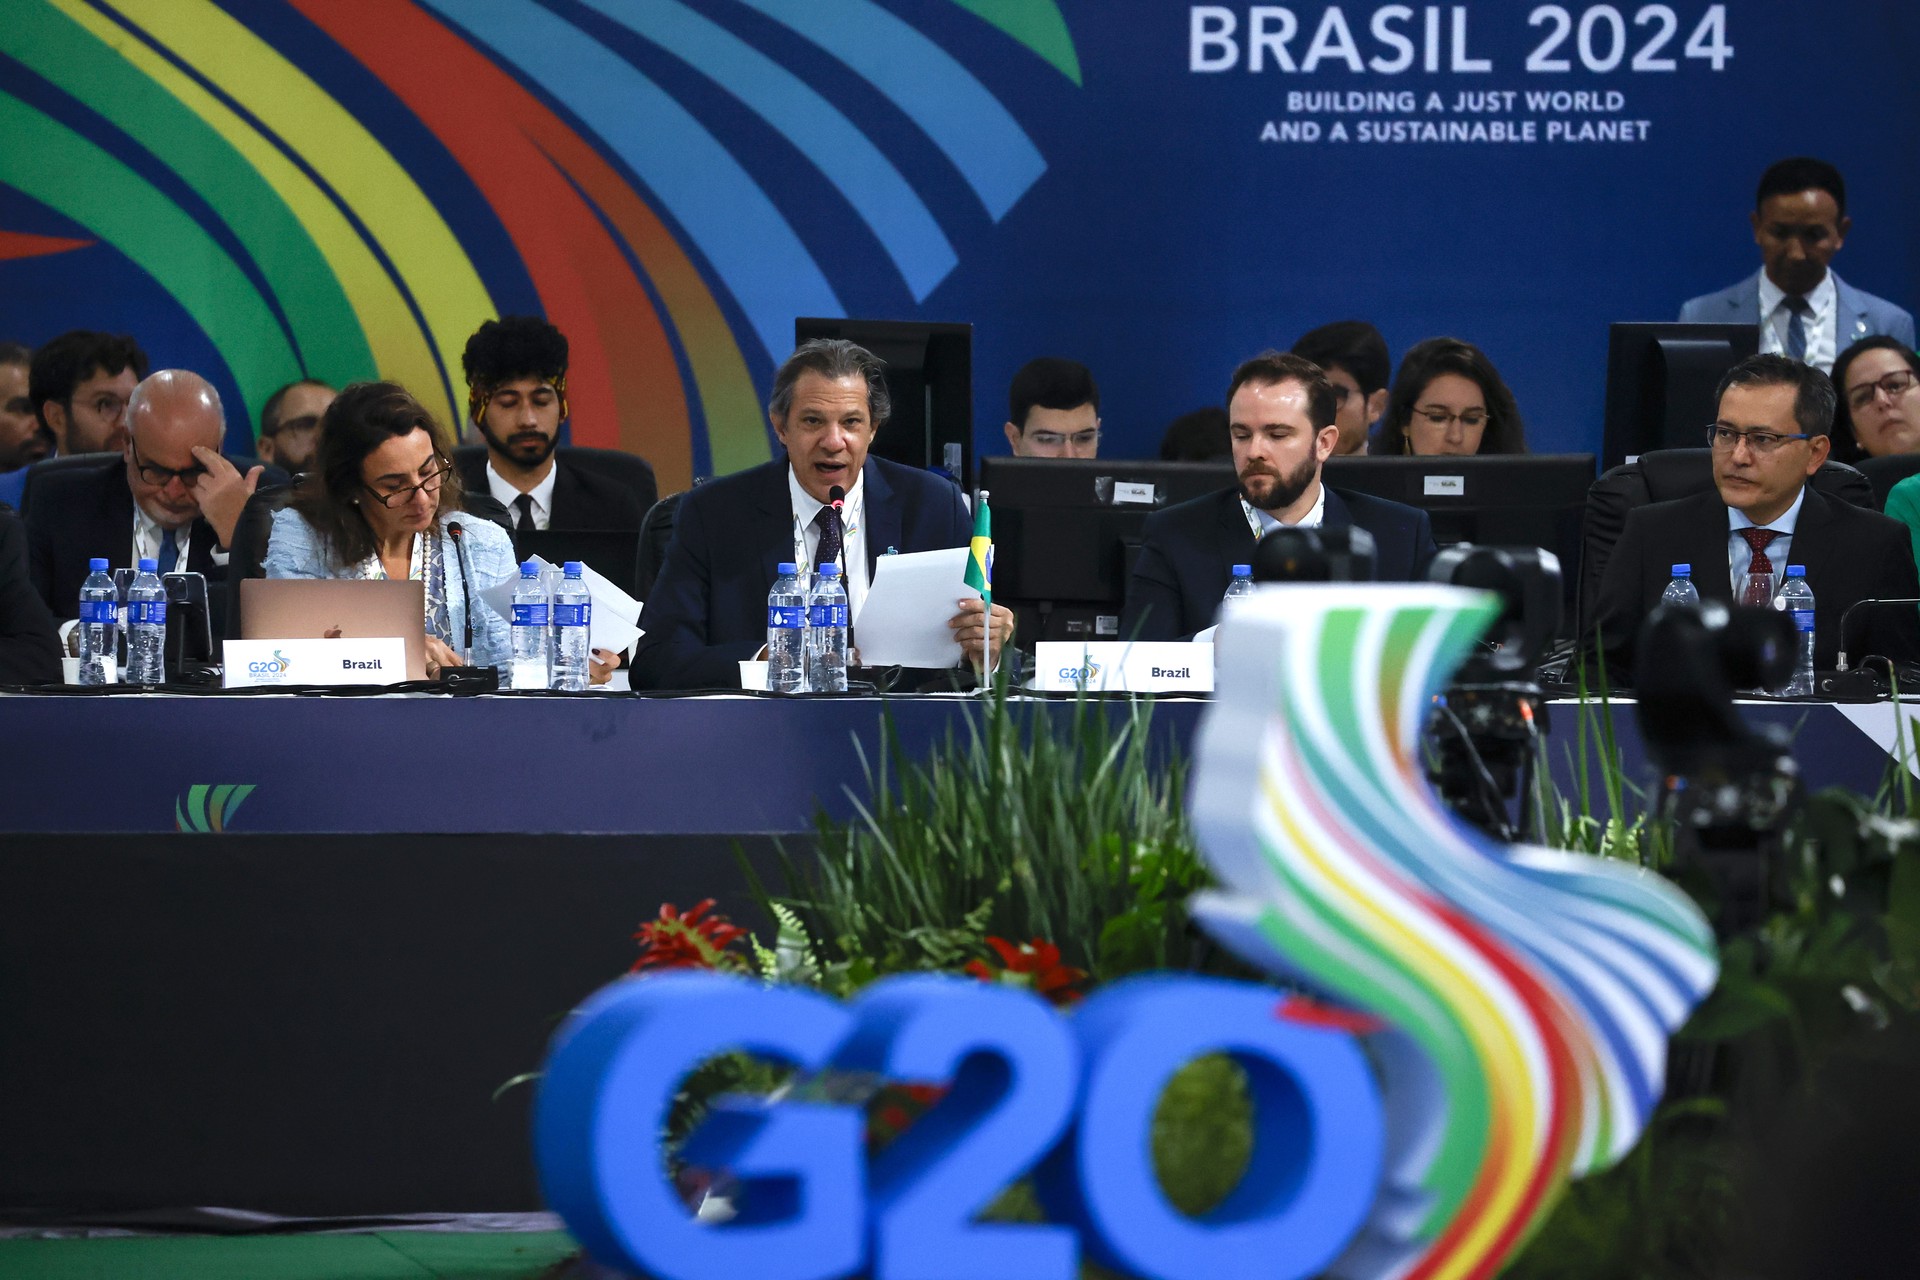 Финансовая G20 не согласовала заявление из-за споров по Украине и Газе